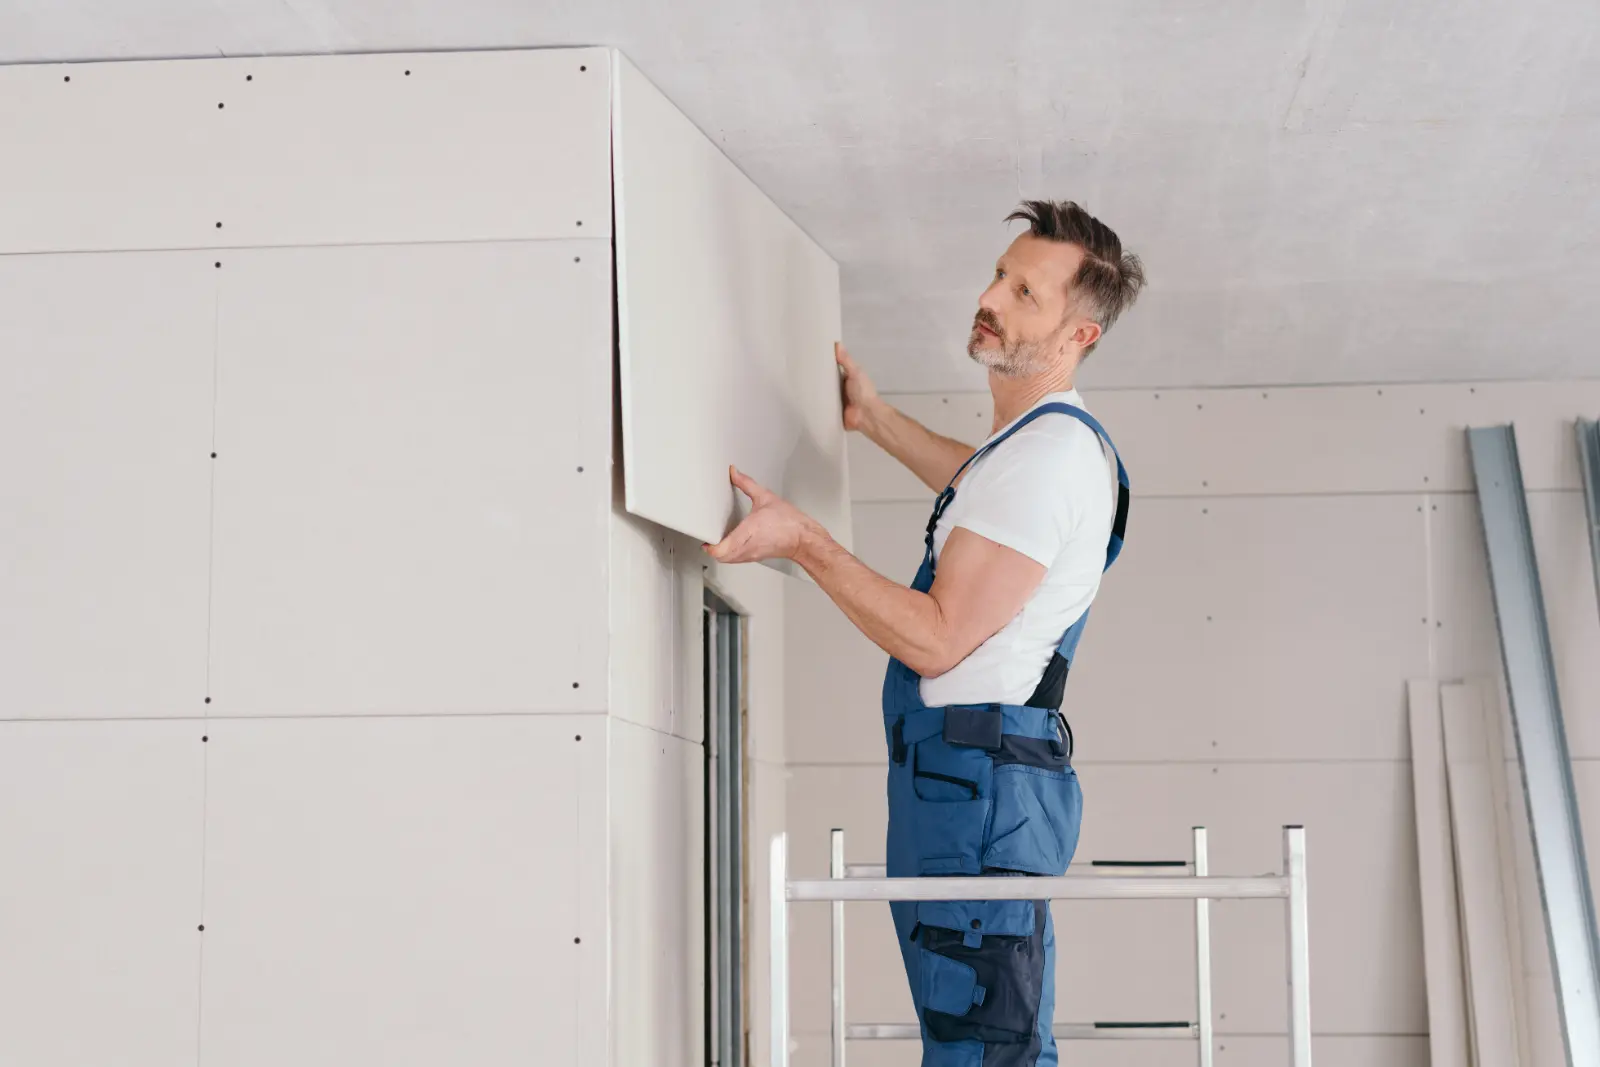 Ceiling Drywall Installation. Builder or handyman fitting wall cladding